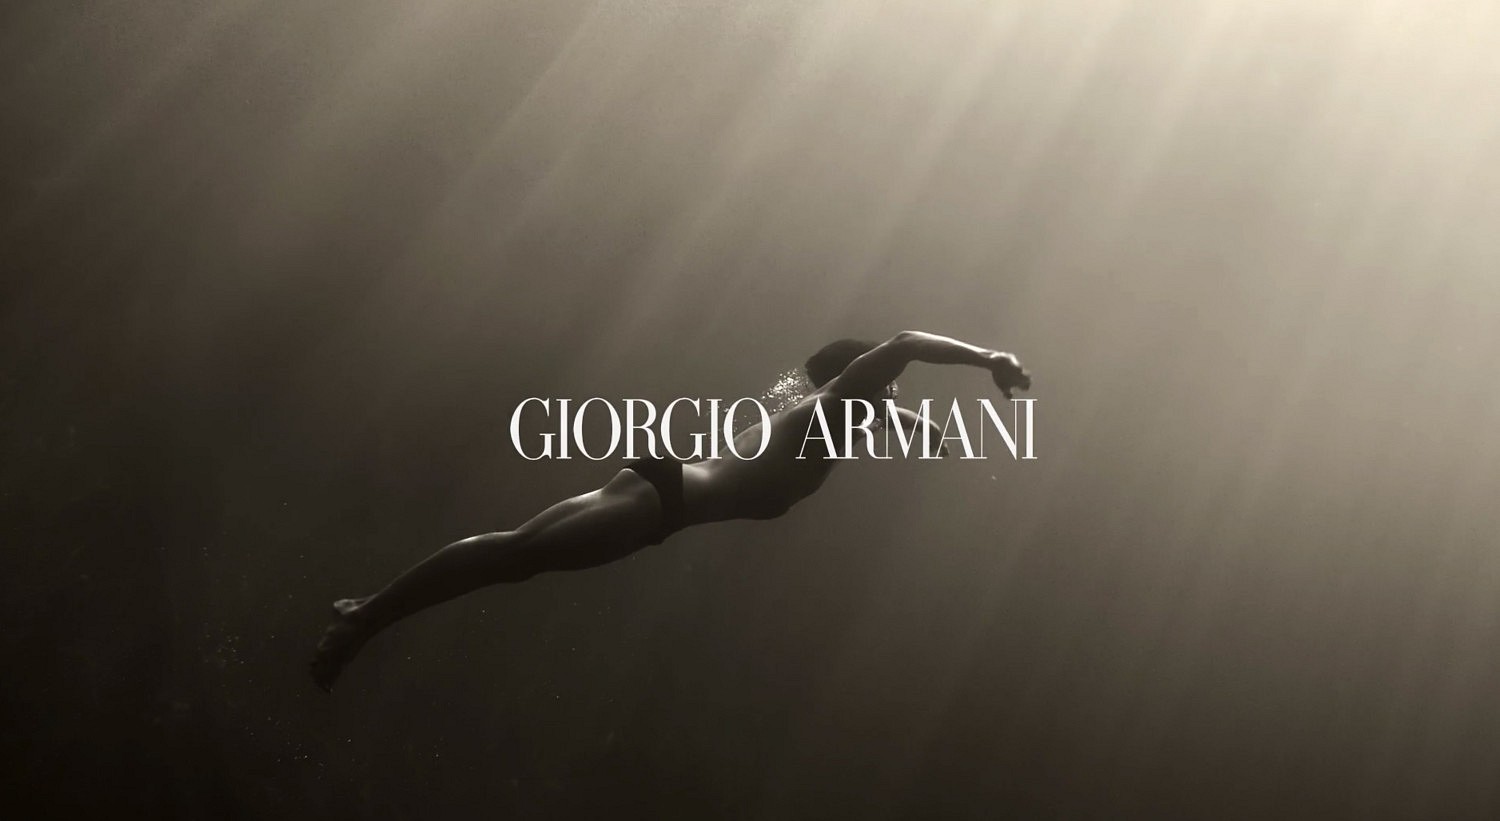   "AQUA DI GIO ABSOLU"  GIORGIO ARMANI 2018     Directed by F.ROUSSEAU   